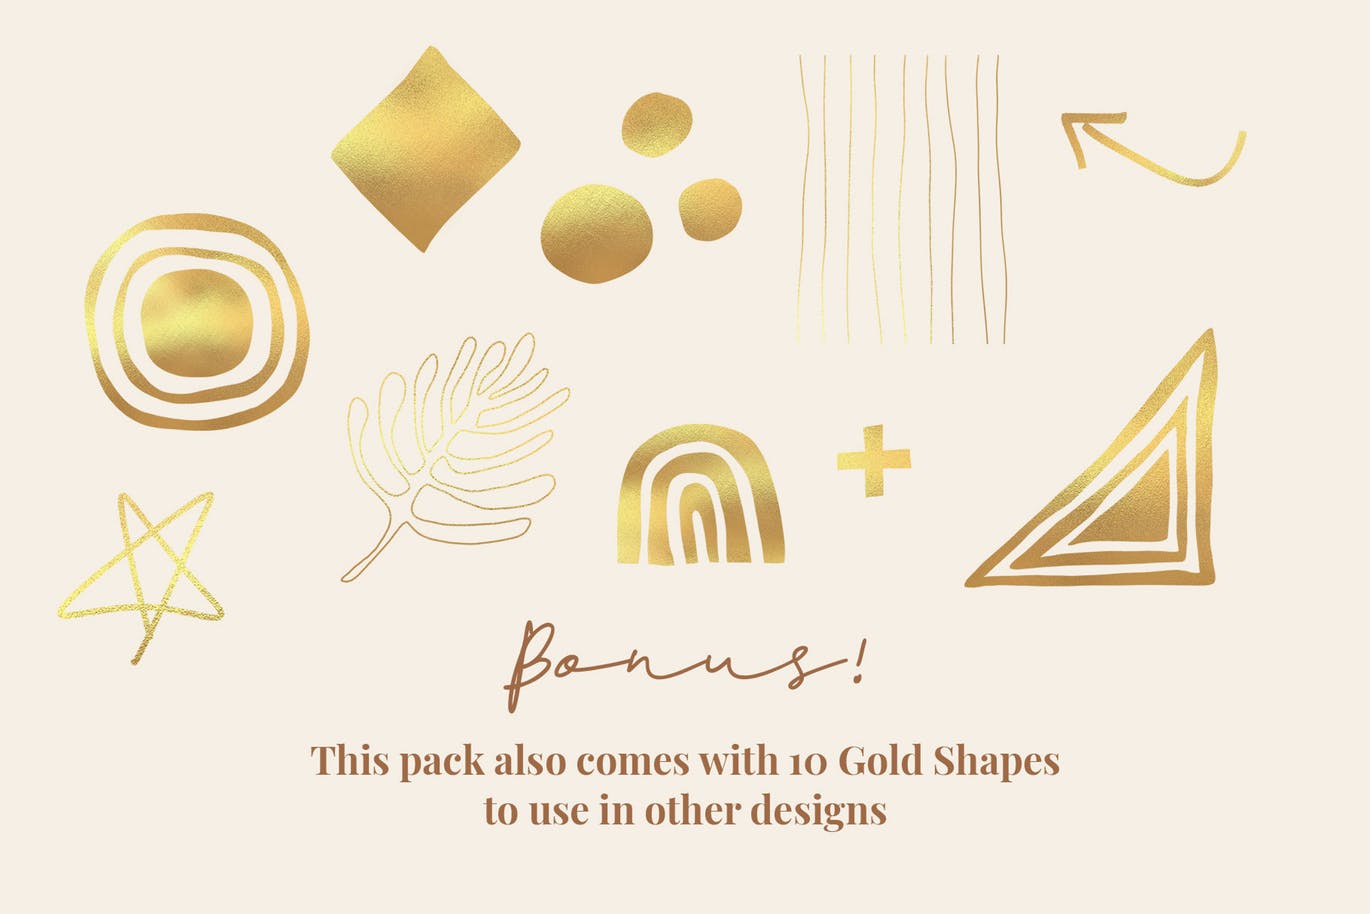 镶金元素Instagram社交设计模板第一素材精选素材 Golden Rings插图(1)